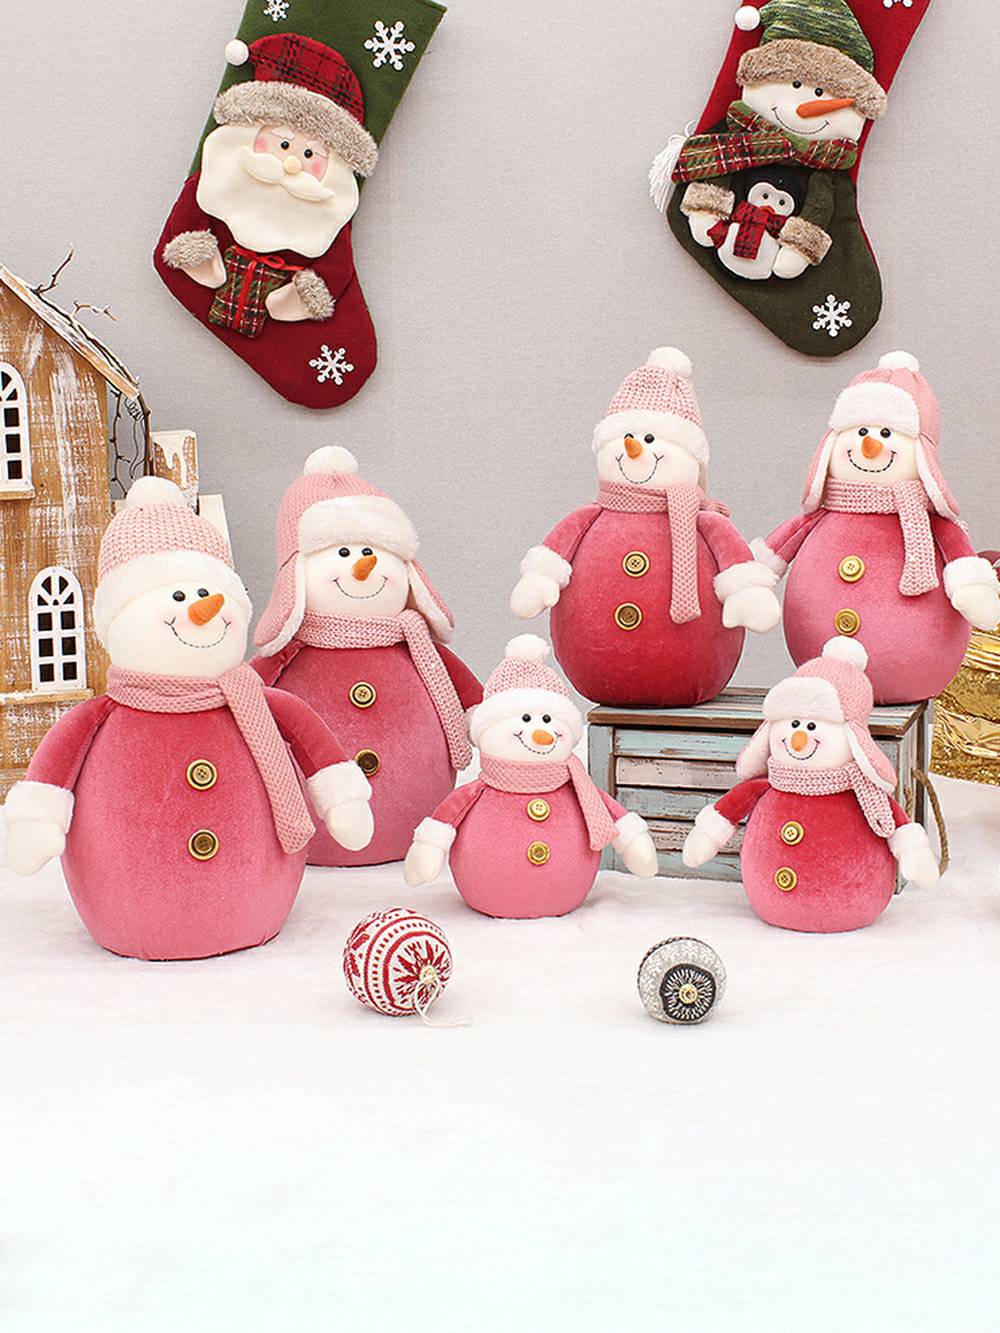 ピンク生地ニット帽雪だるまぬいぐるみクリスマスデコレーション